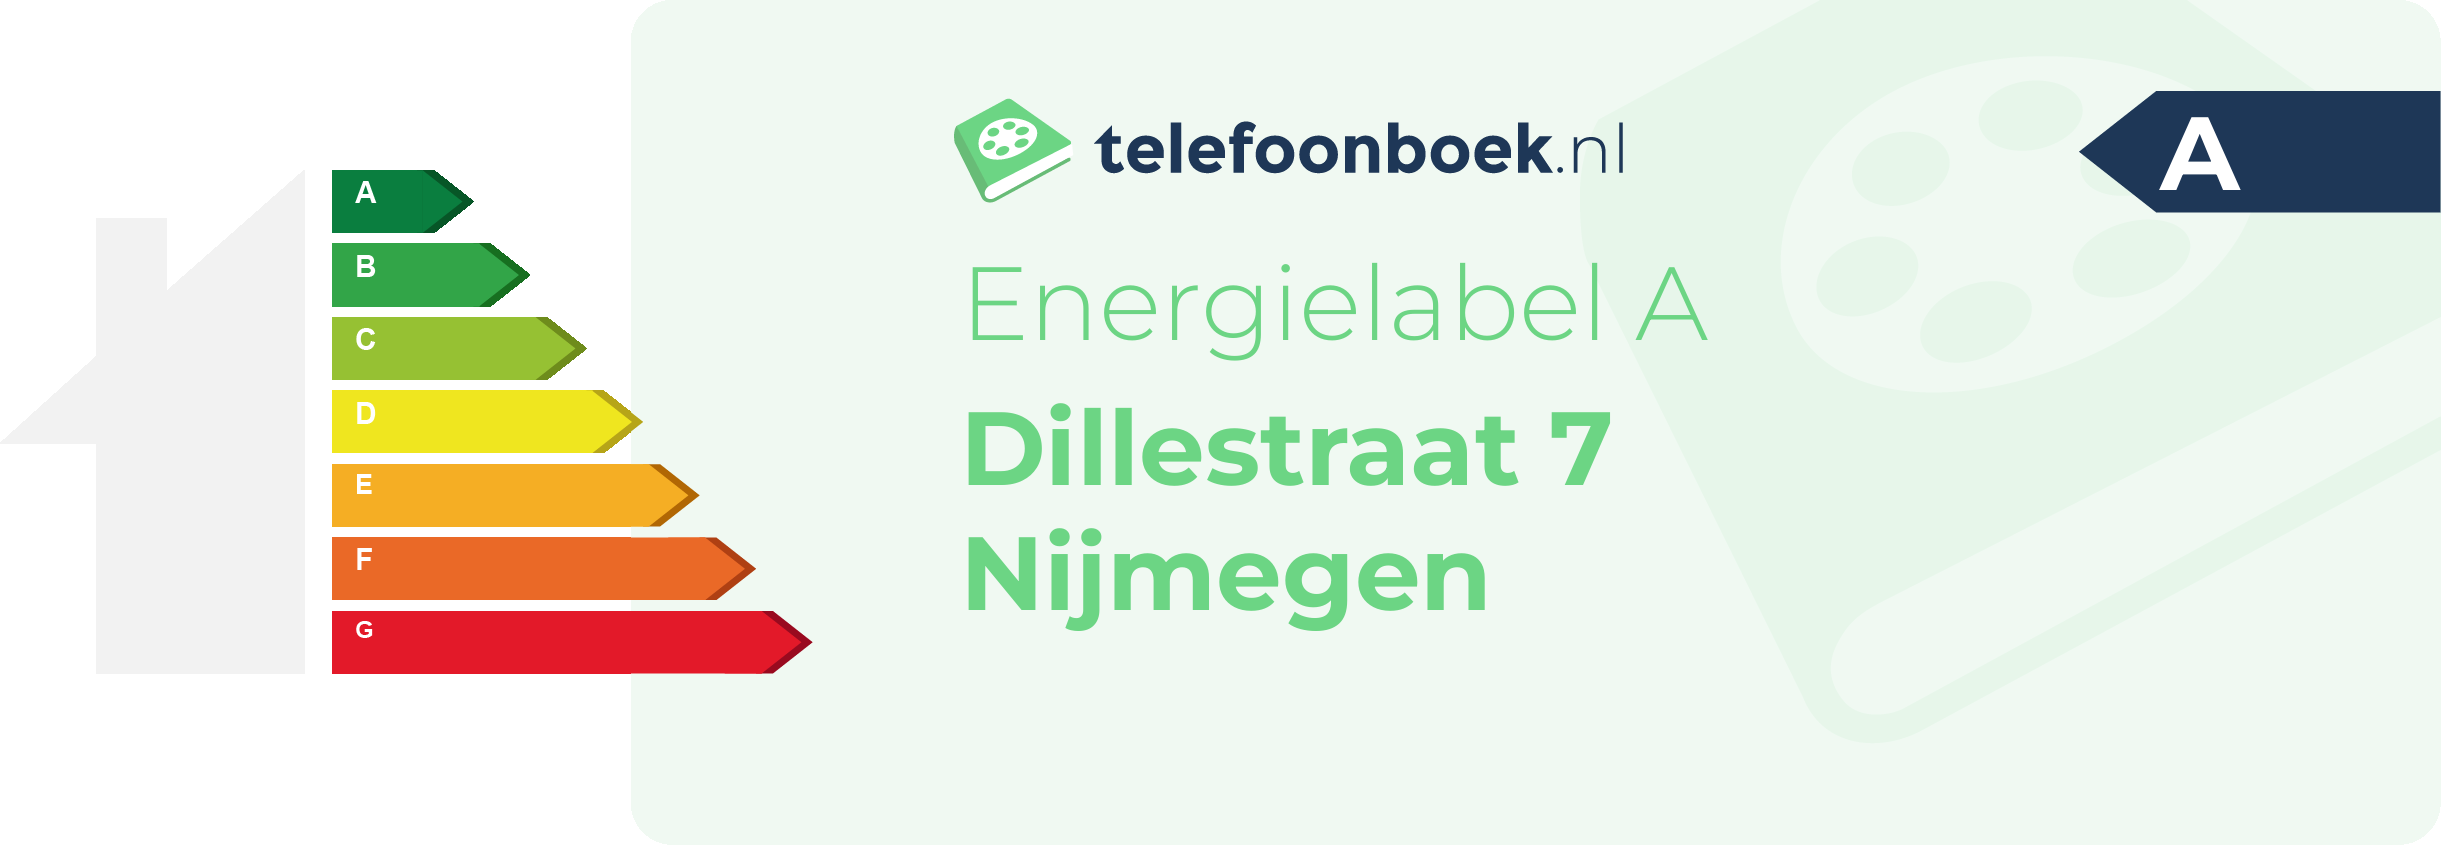 Energielabel Dillestraat 7 Nijmegen